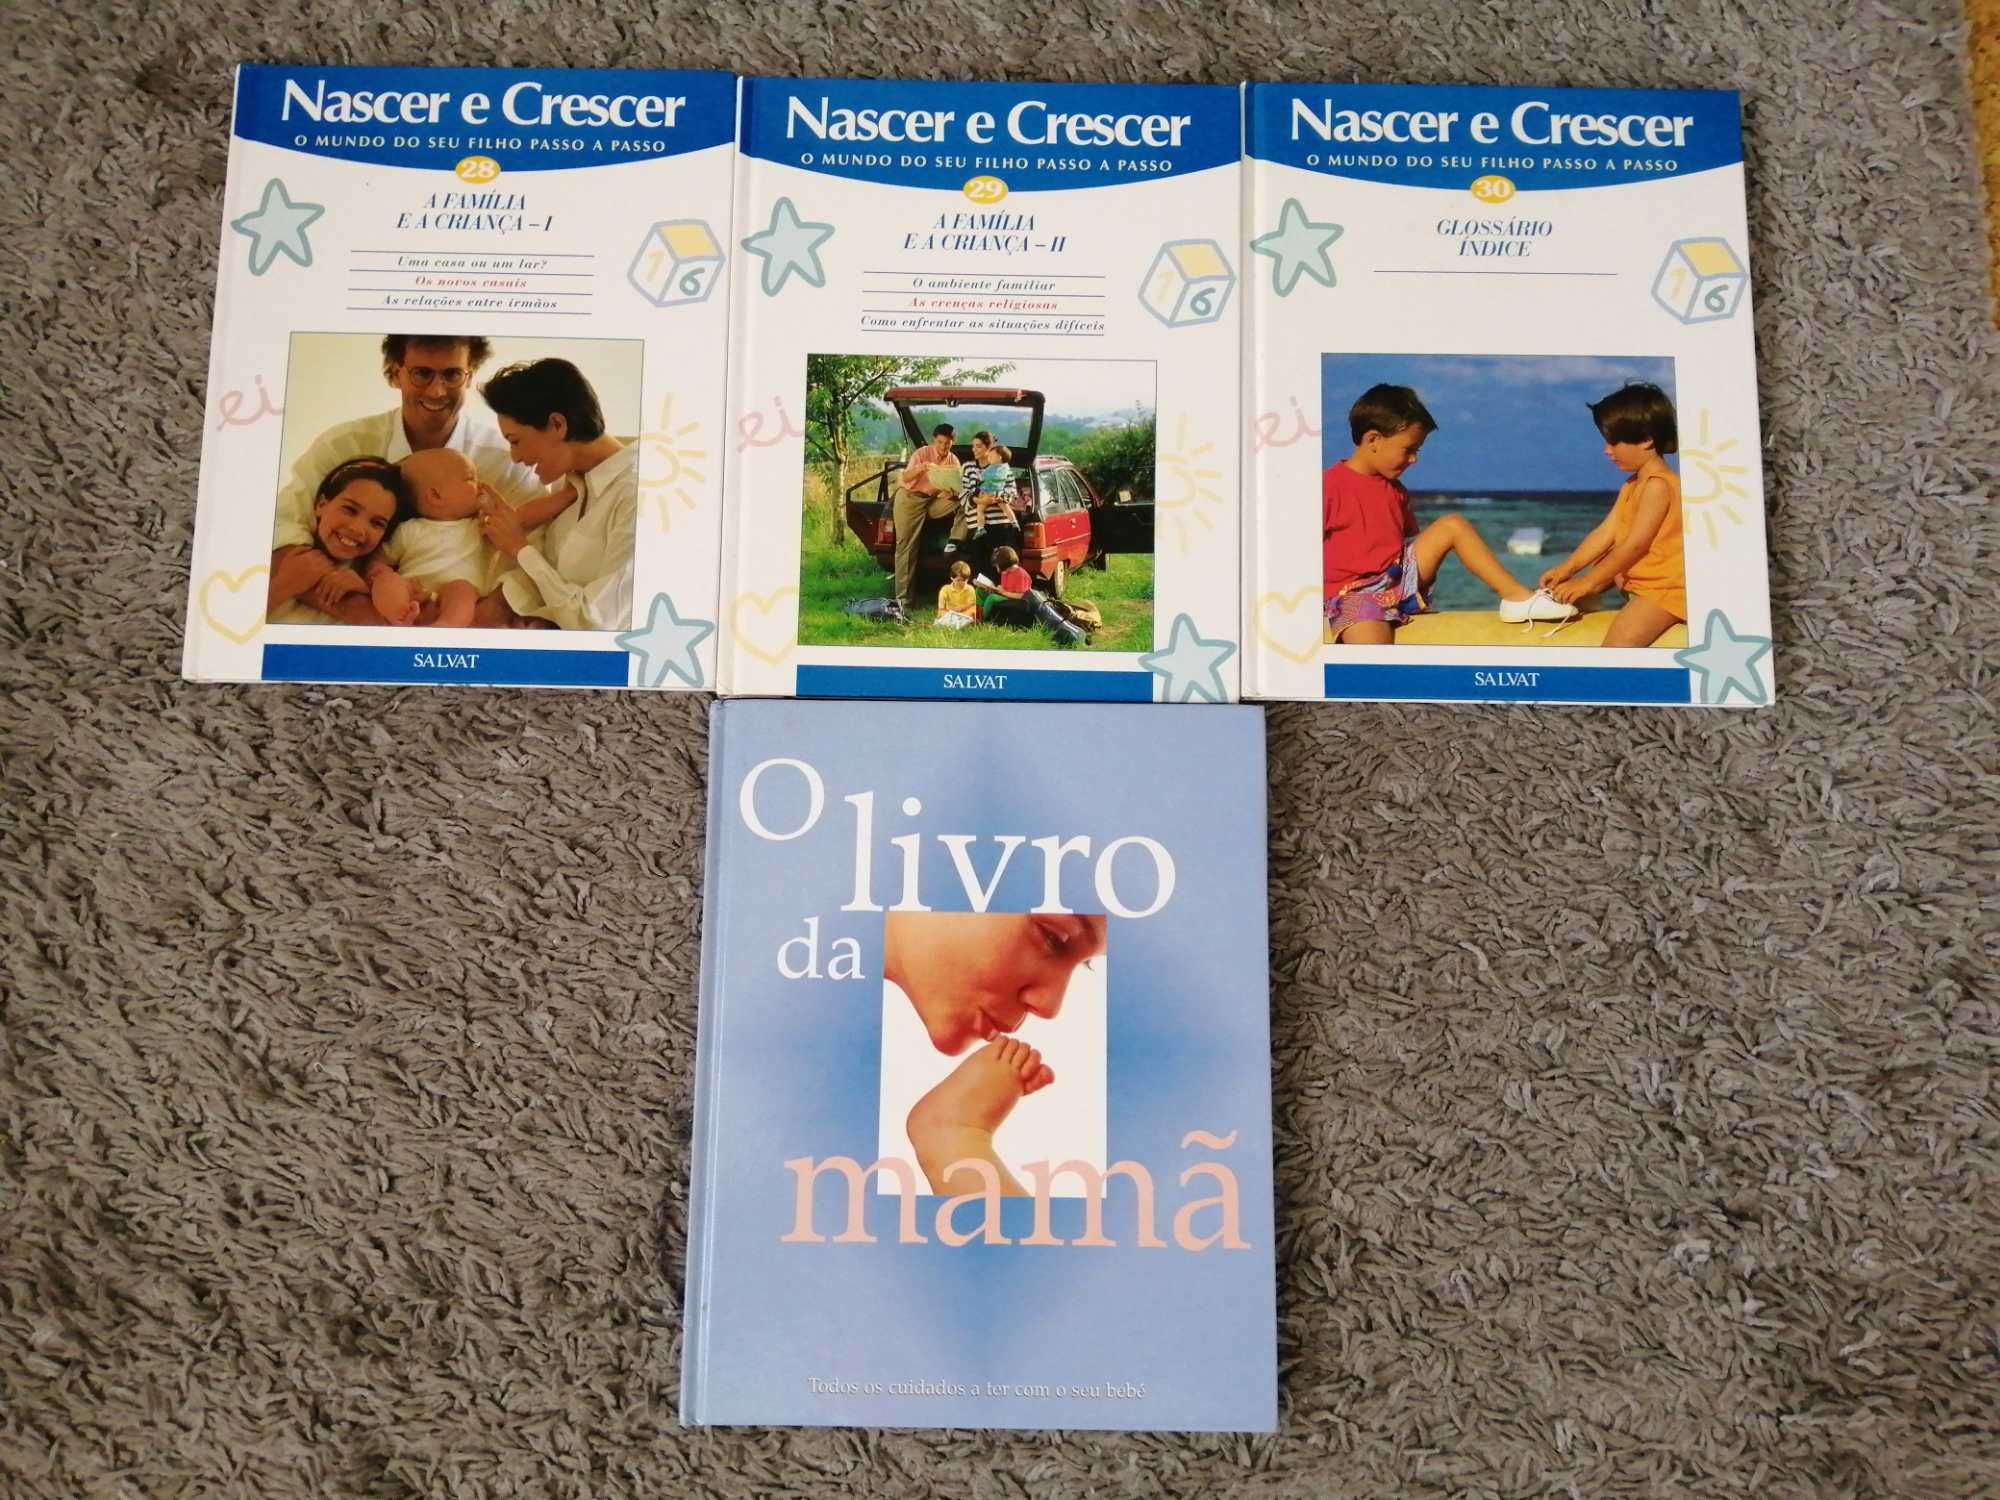 31 Livros Nascer e Crescer para bebés - colecção completa!